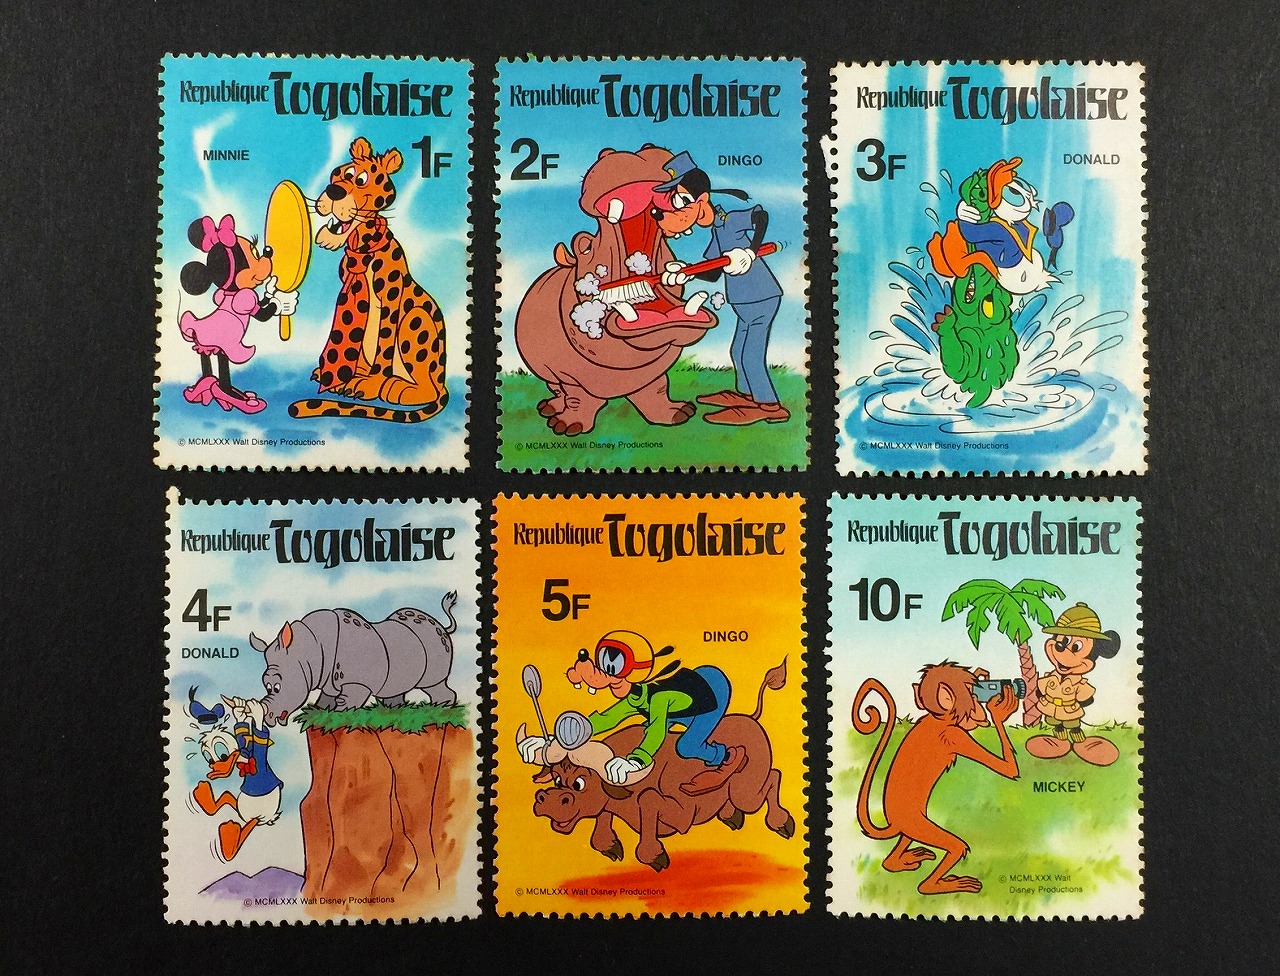 ディズニー切手 republique togolaise切手 6種セット | 収集ワールド